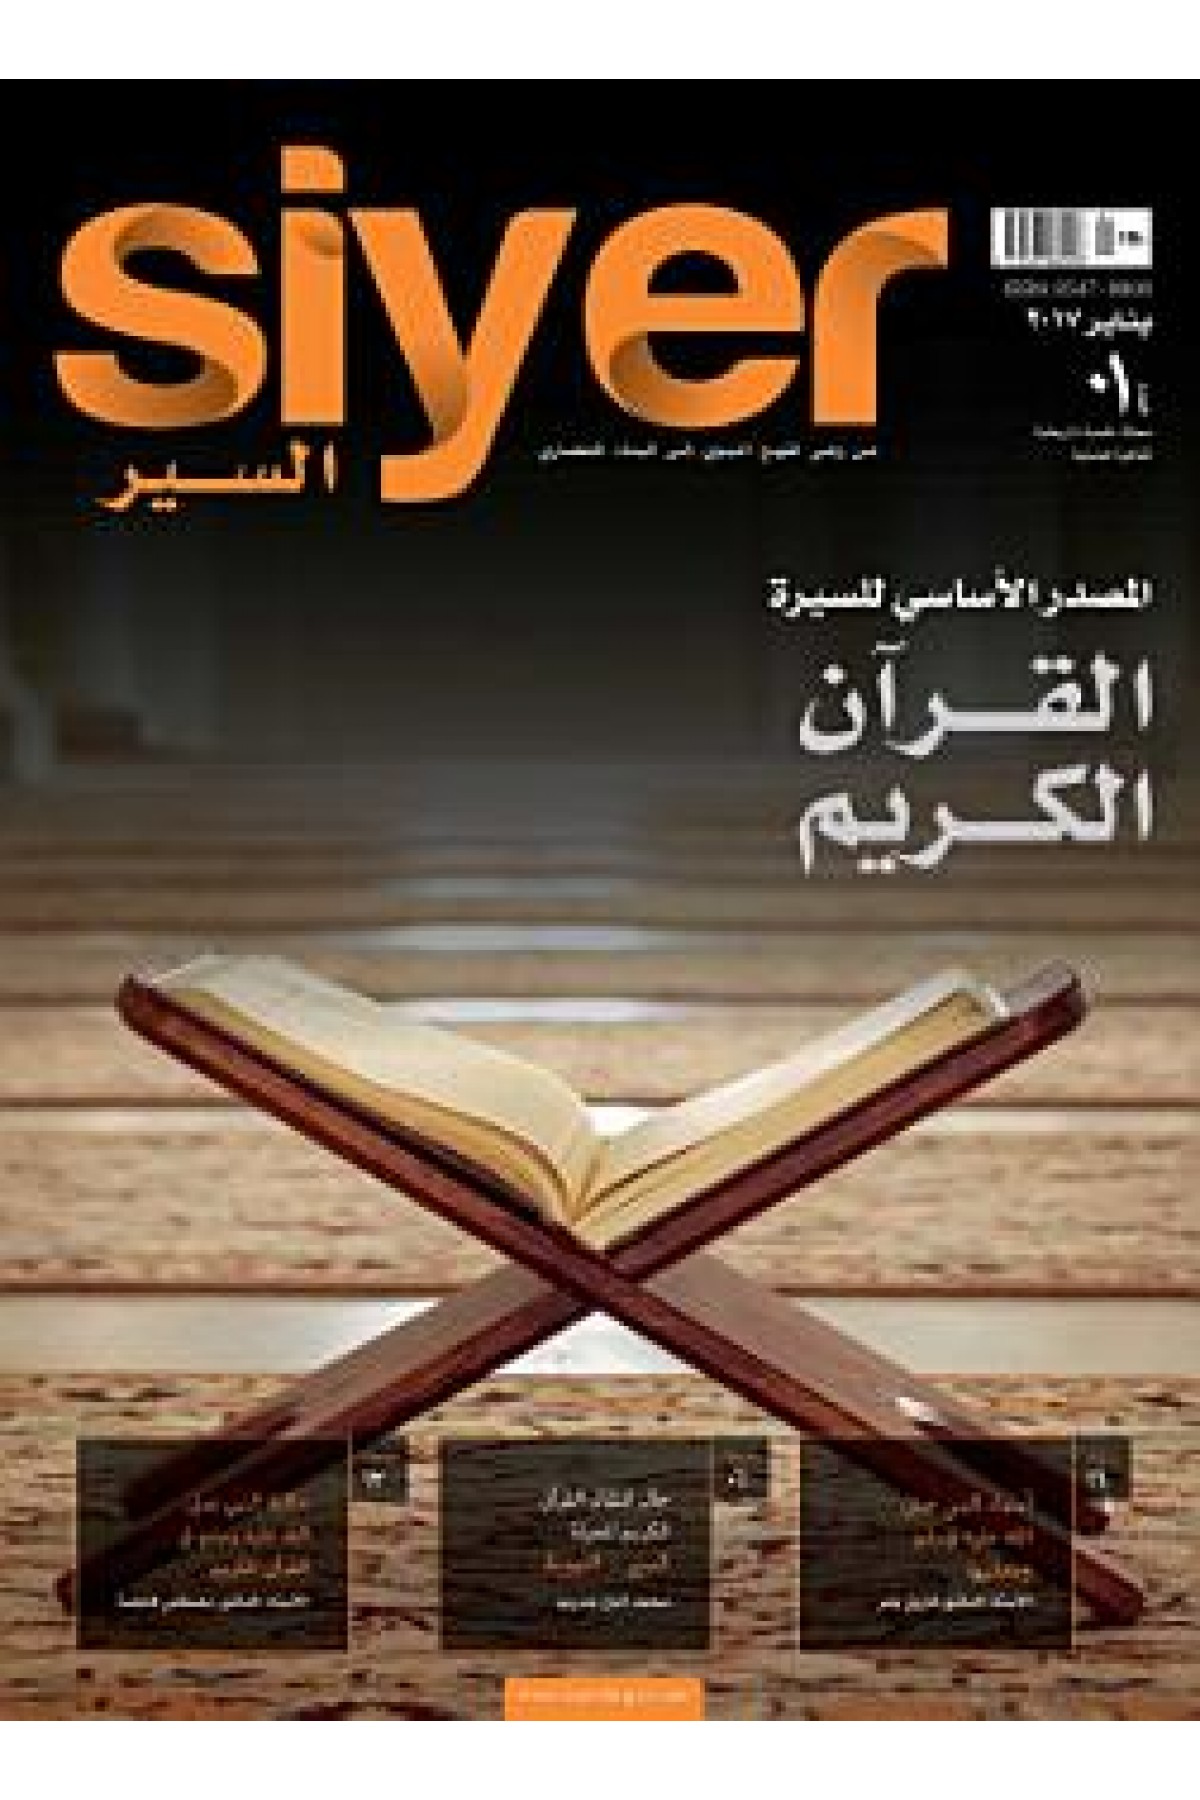 Siyer İlim Tarih ve Kültür Dergisi Sayı:1 (Arabic) / Ocak 2017